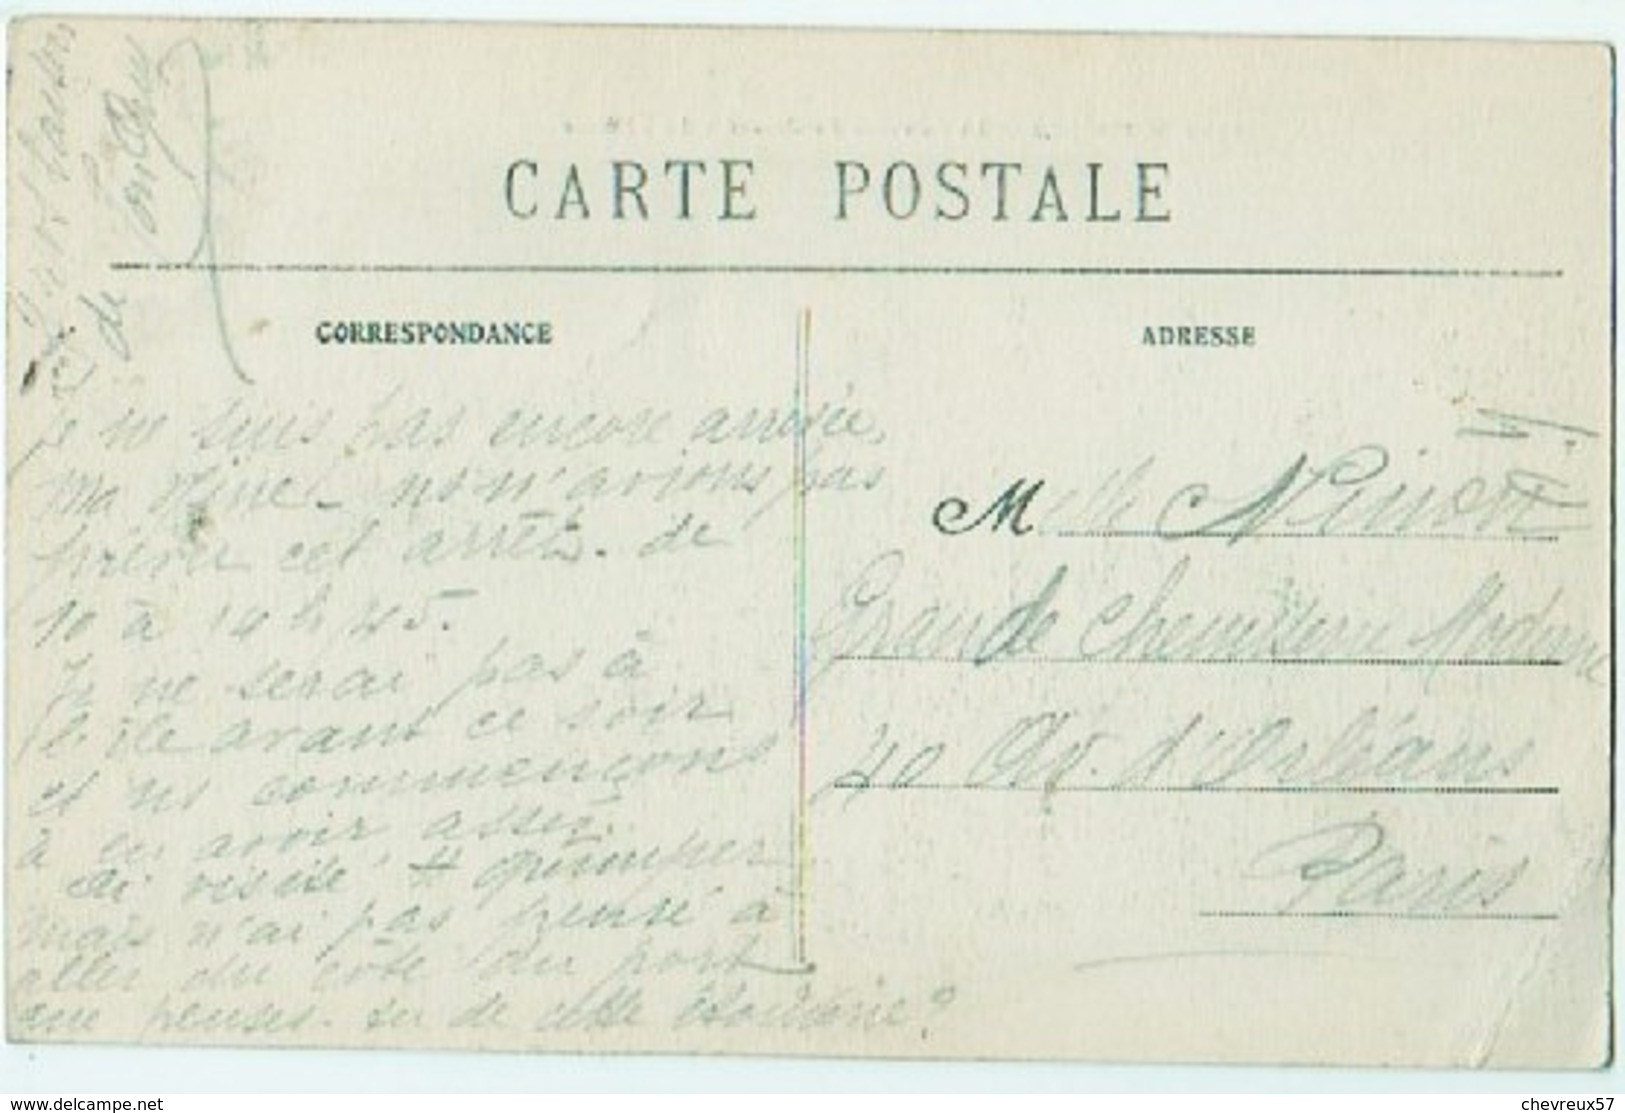 VILLES ET VILLAGES DE FRANCE - LOT 29 - Belle série 35 cartes anciennes divers dont Bretagne - Départ 1€